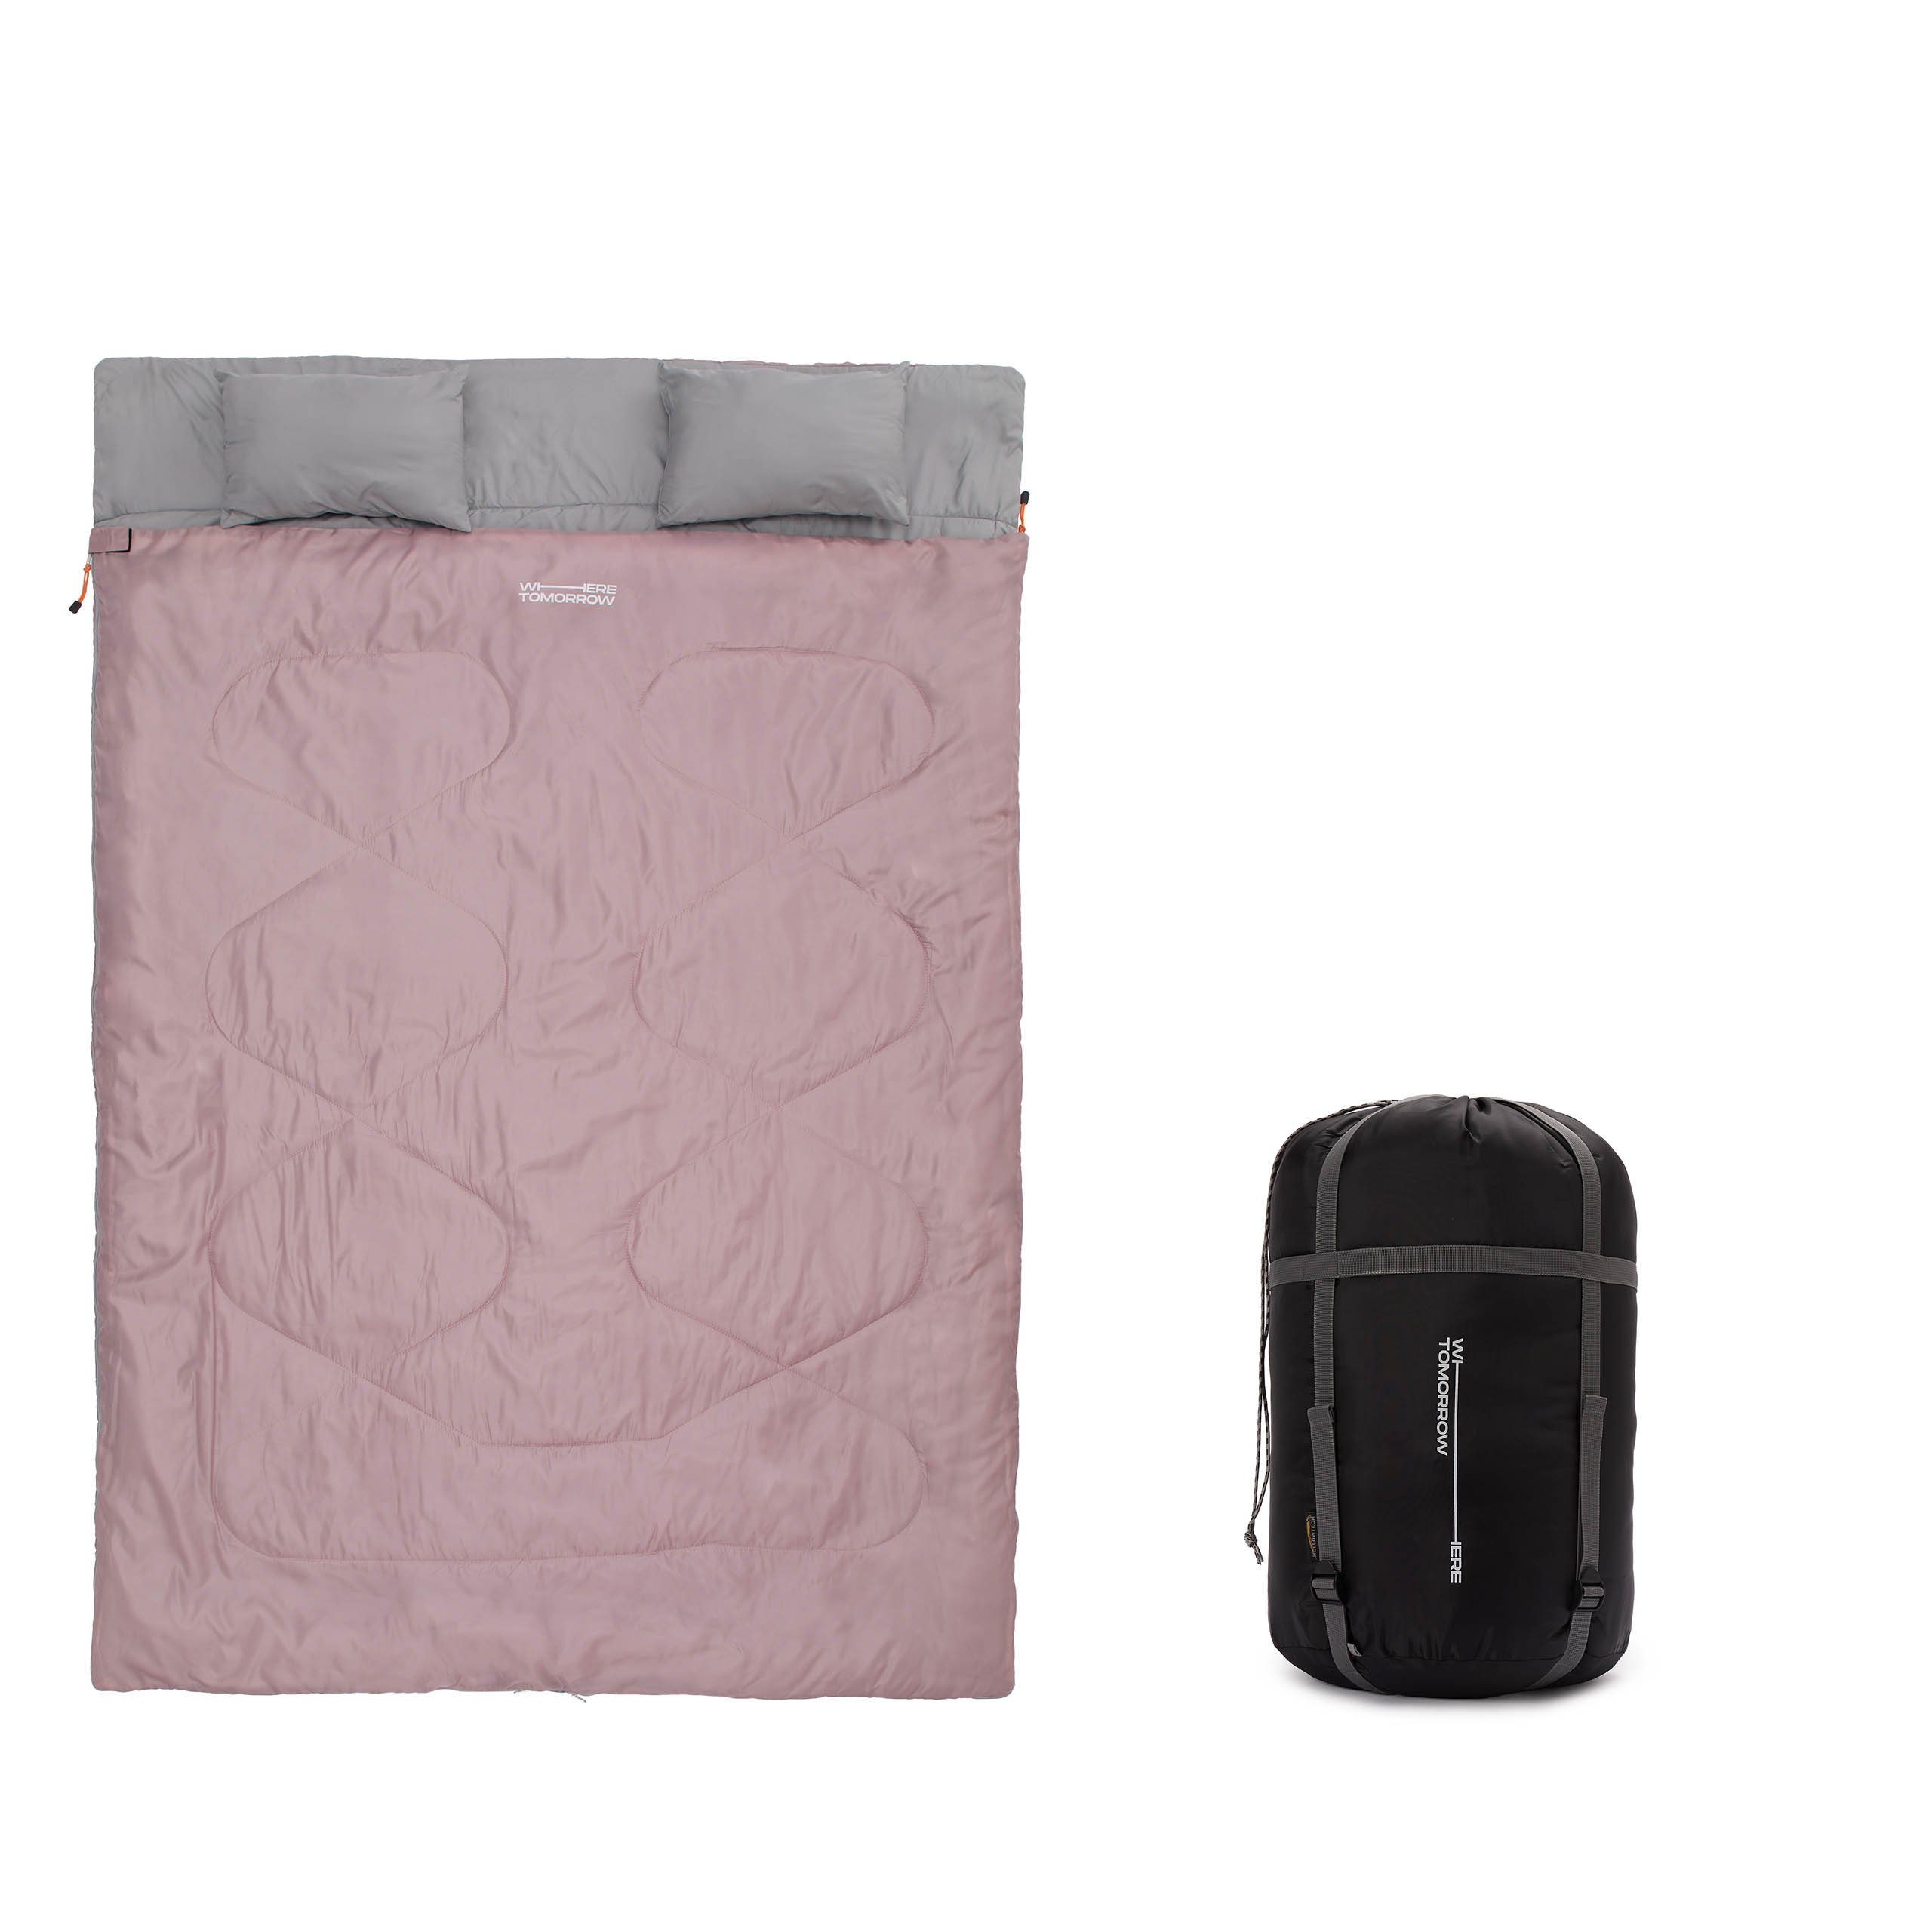 Lumaland Doppelschlafsack 2-Personen Schlafsack groß Kopfkissen, 190x30x150cm - Hüttenschlafsack wasserabweisend, atmungsaktiv Rose